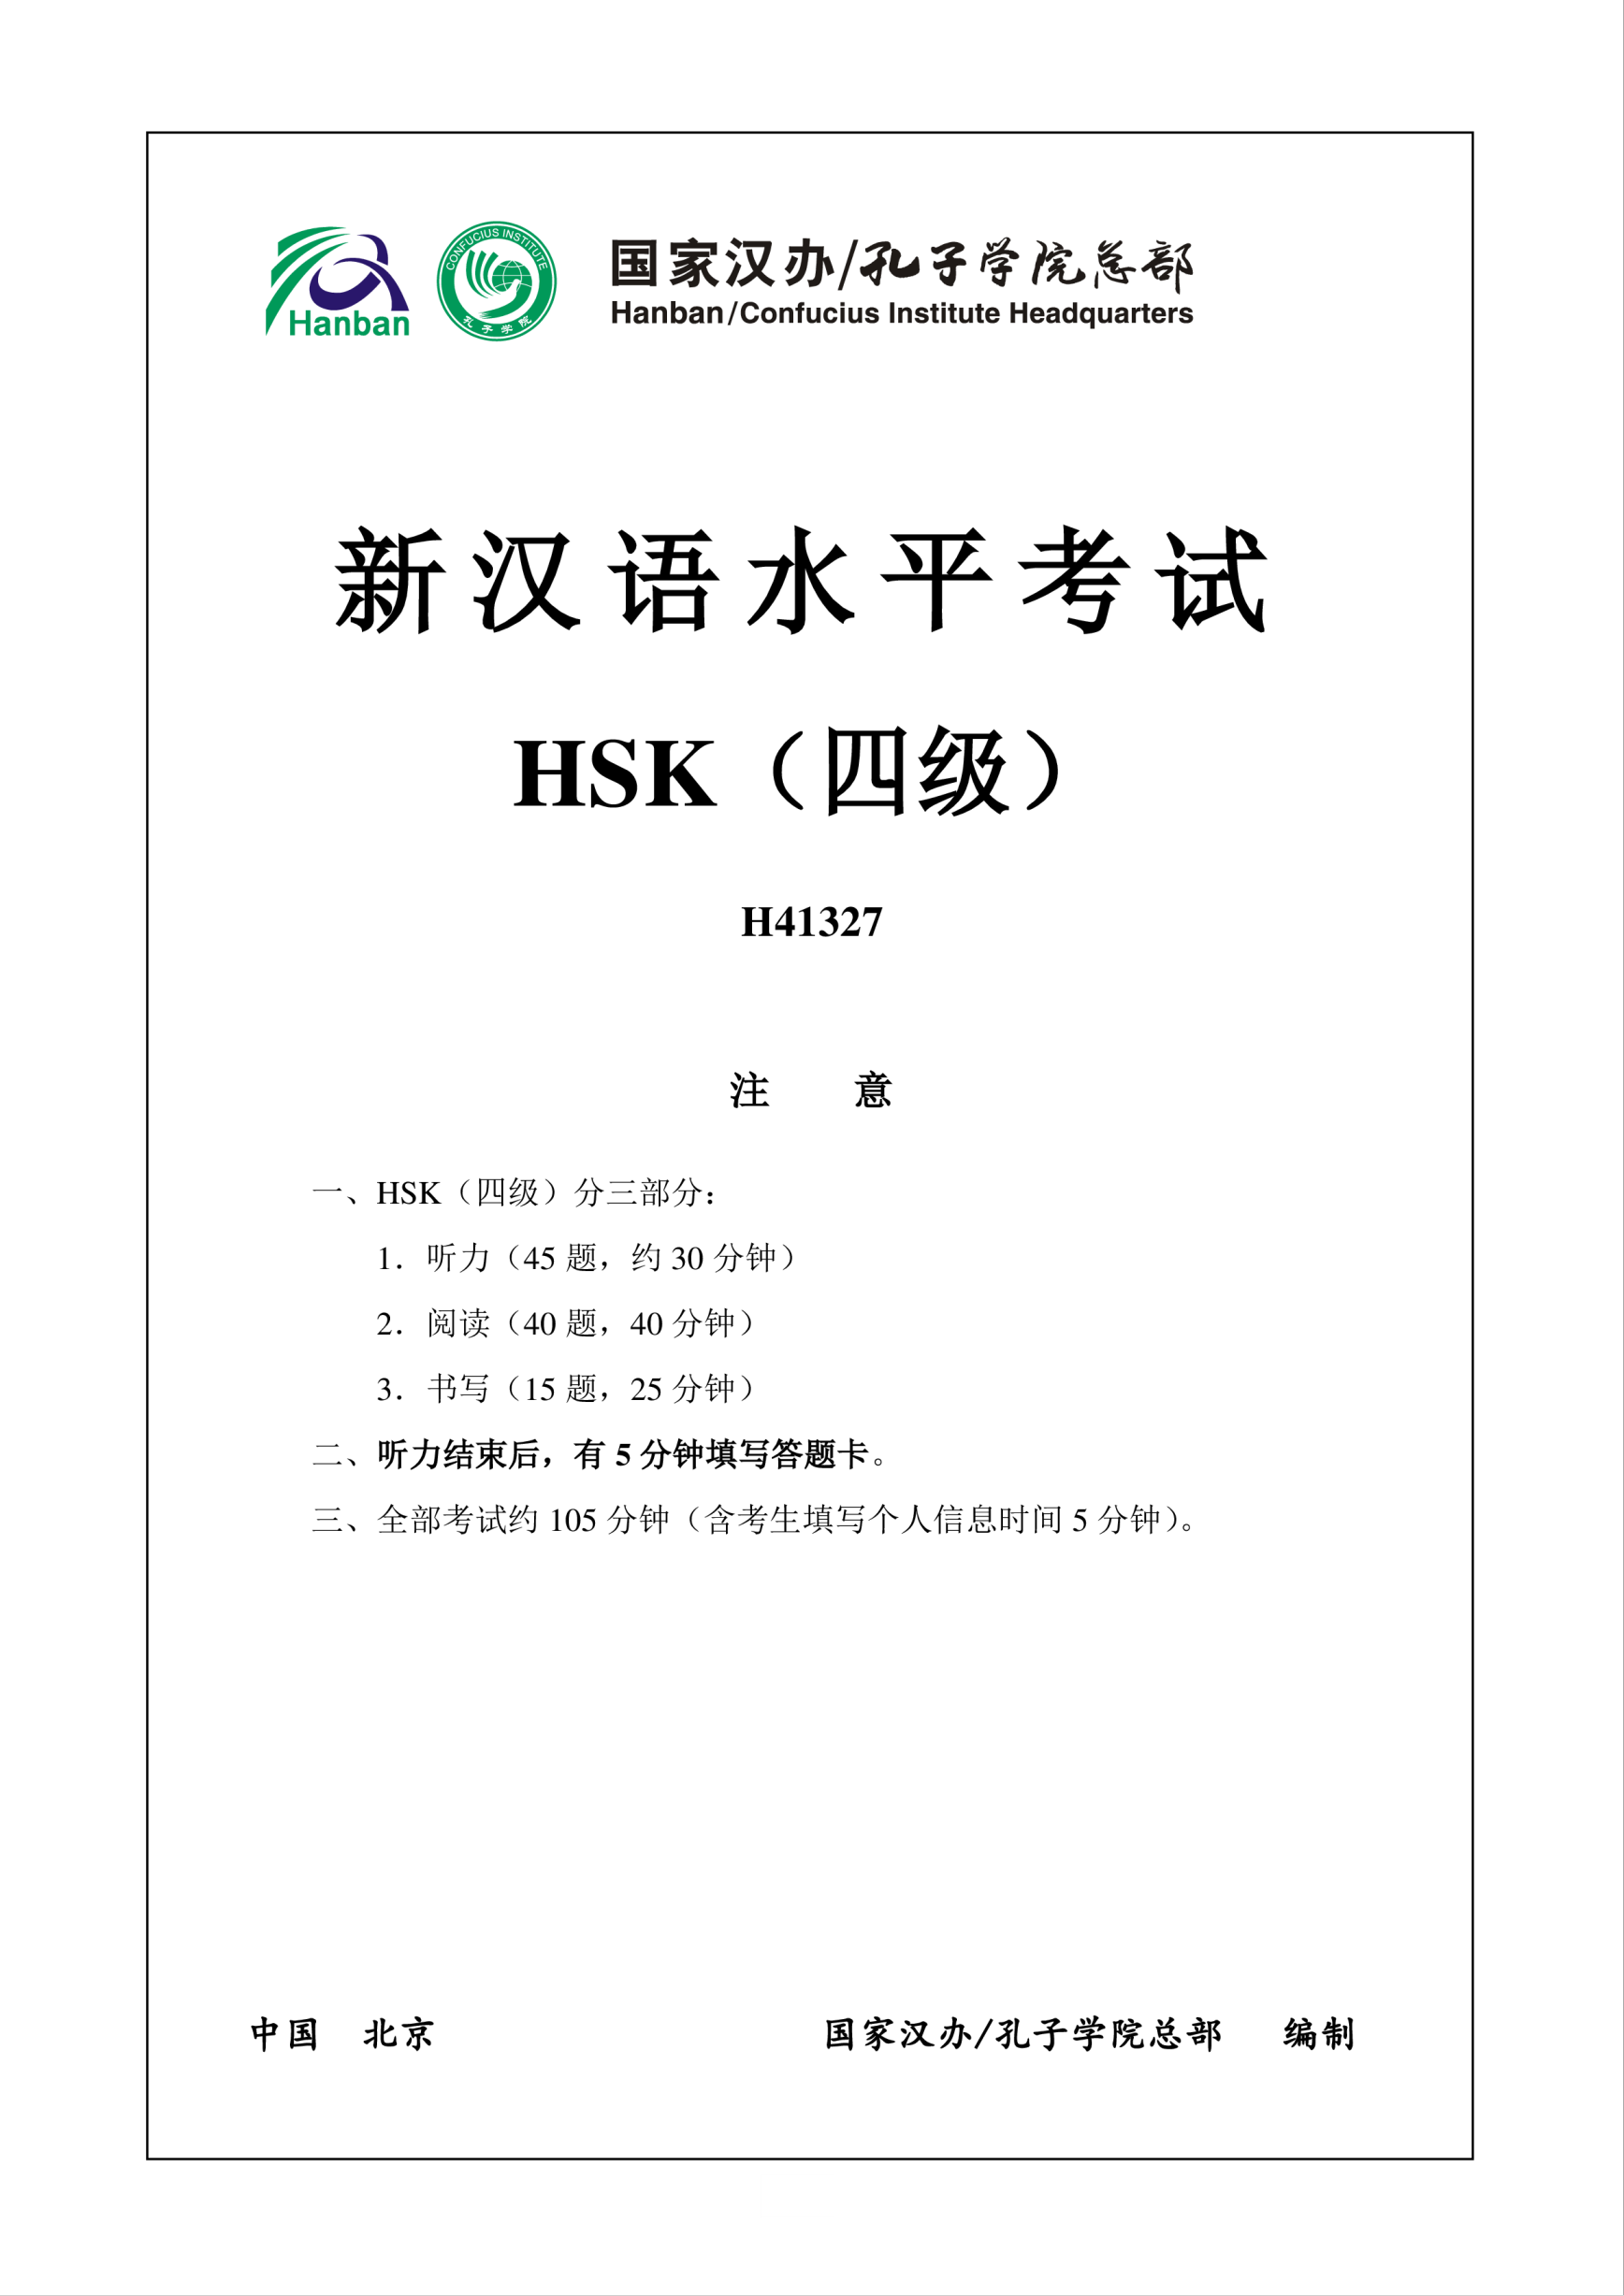 Vorschaubild der VorlageHSK4 Chinese Exam incl Audio and Answers # H41327